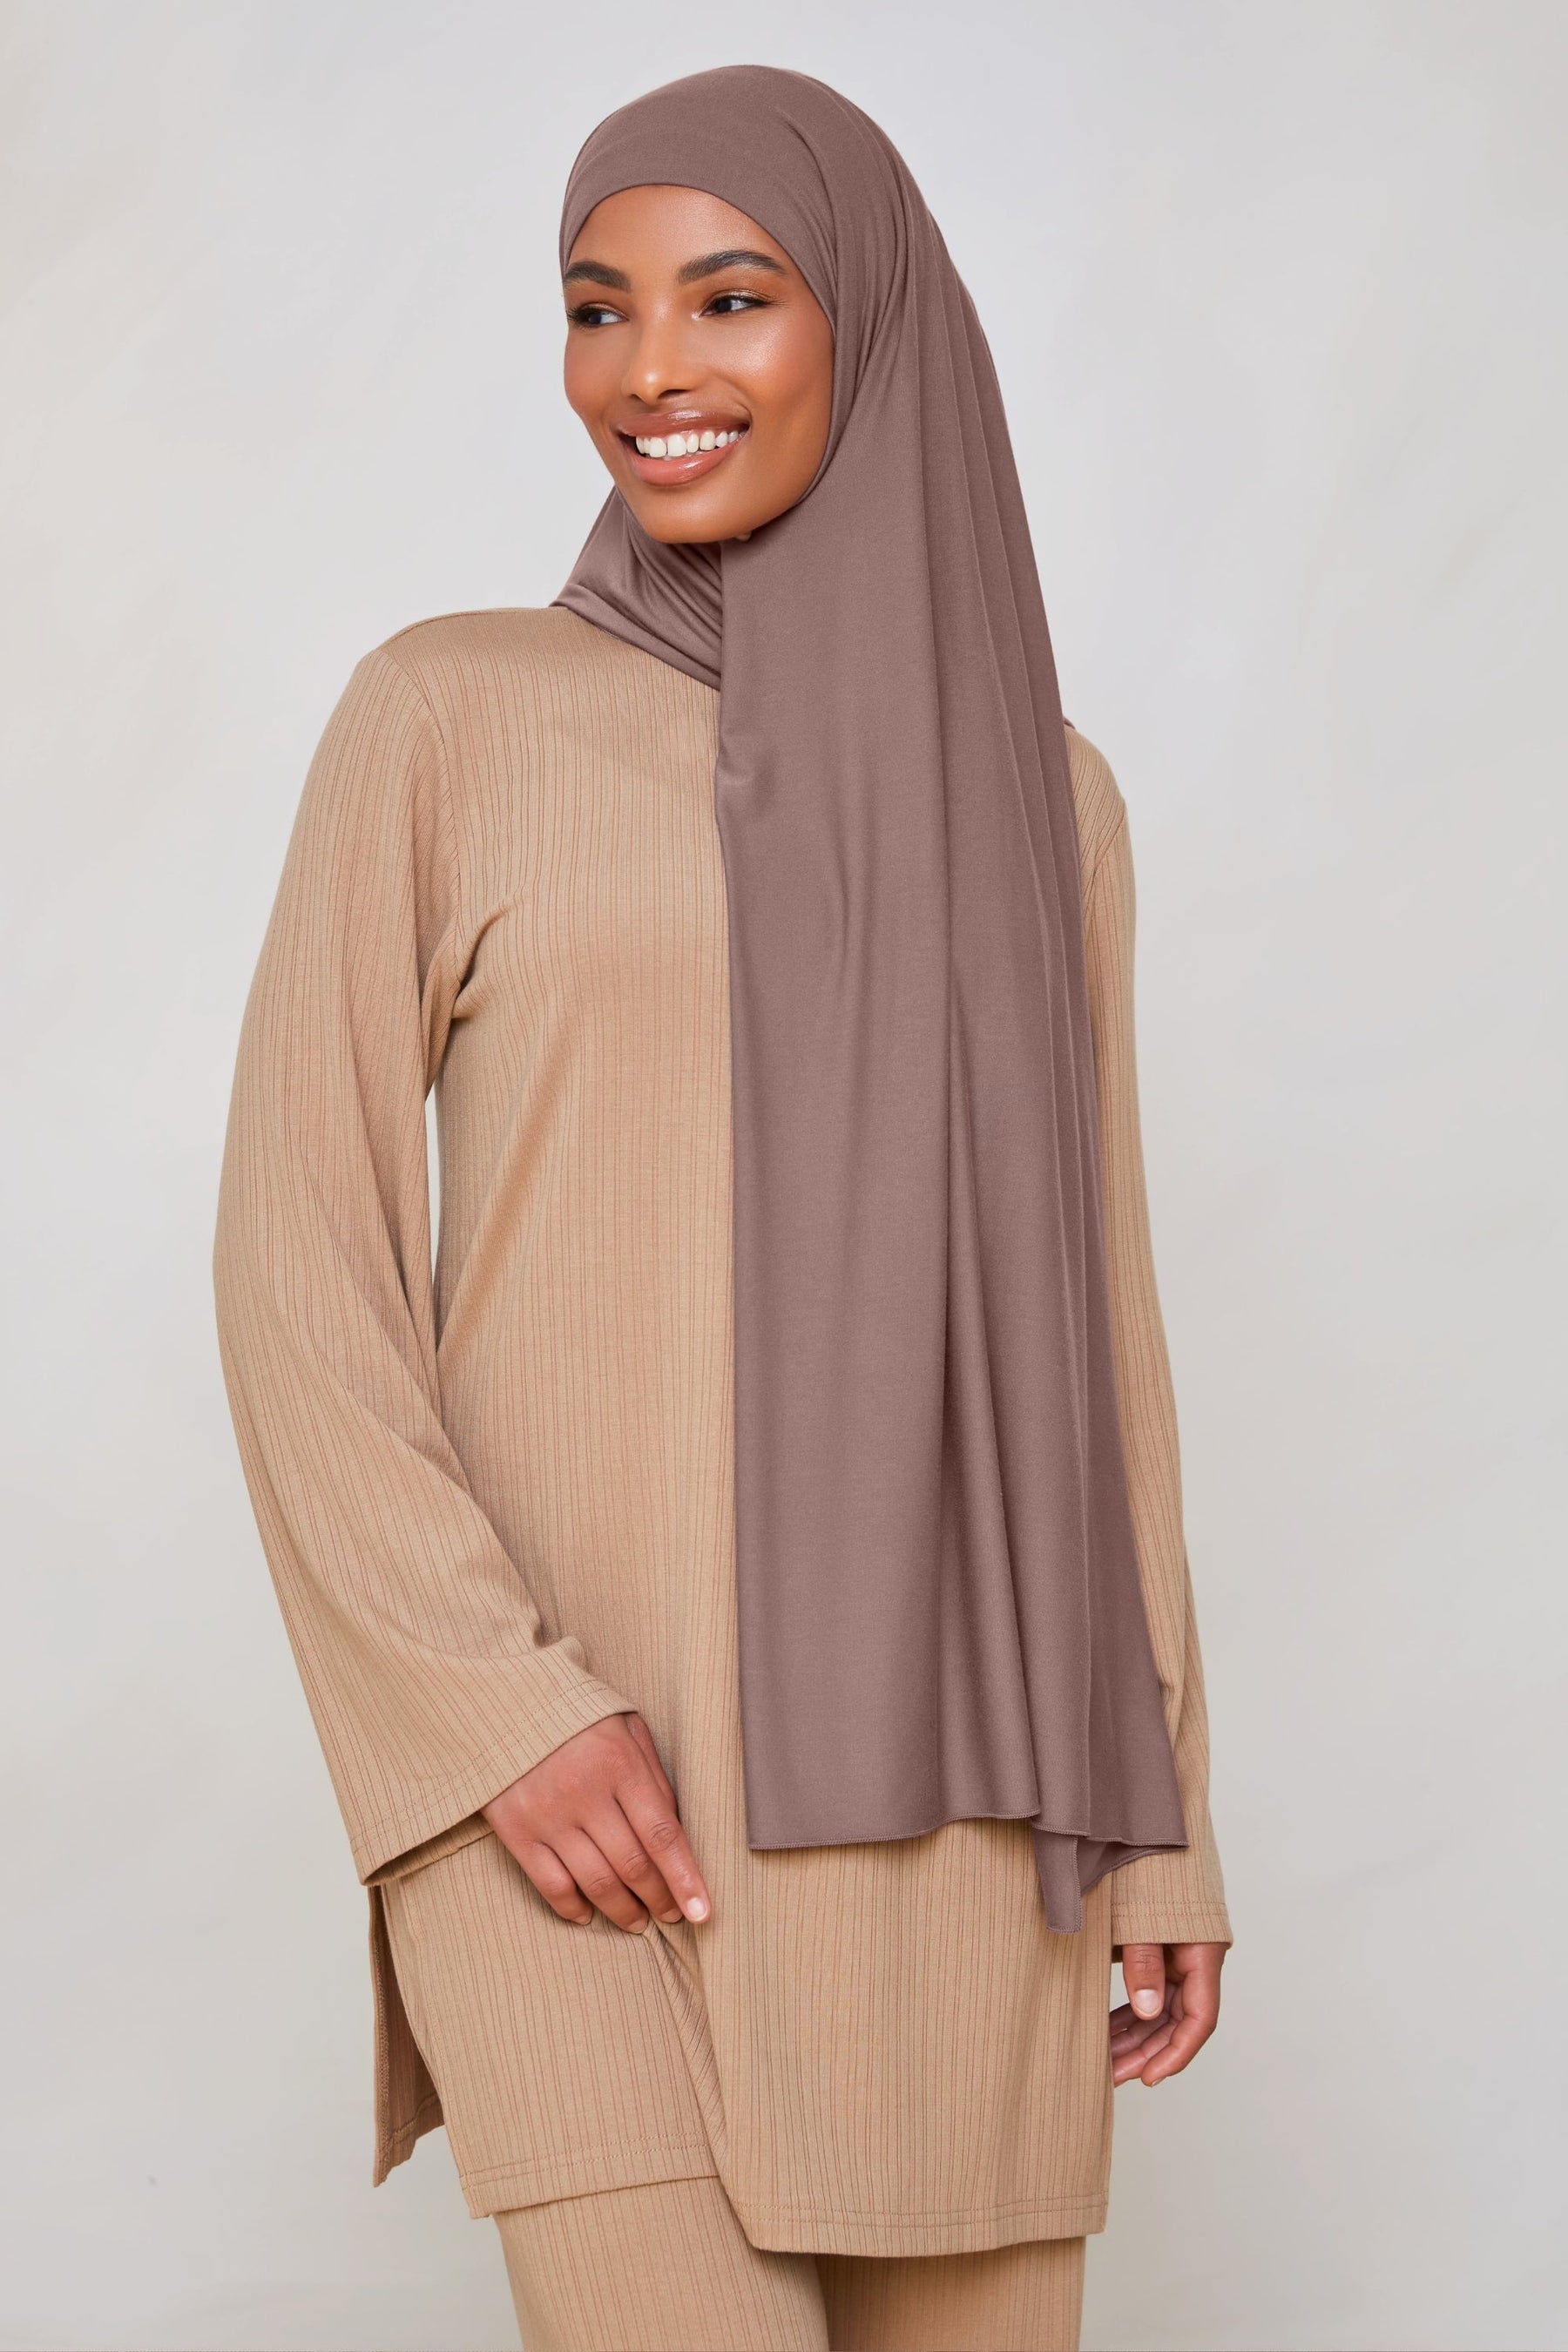 Bamboo Jersey Hijab - Deep Taupe Veiled 